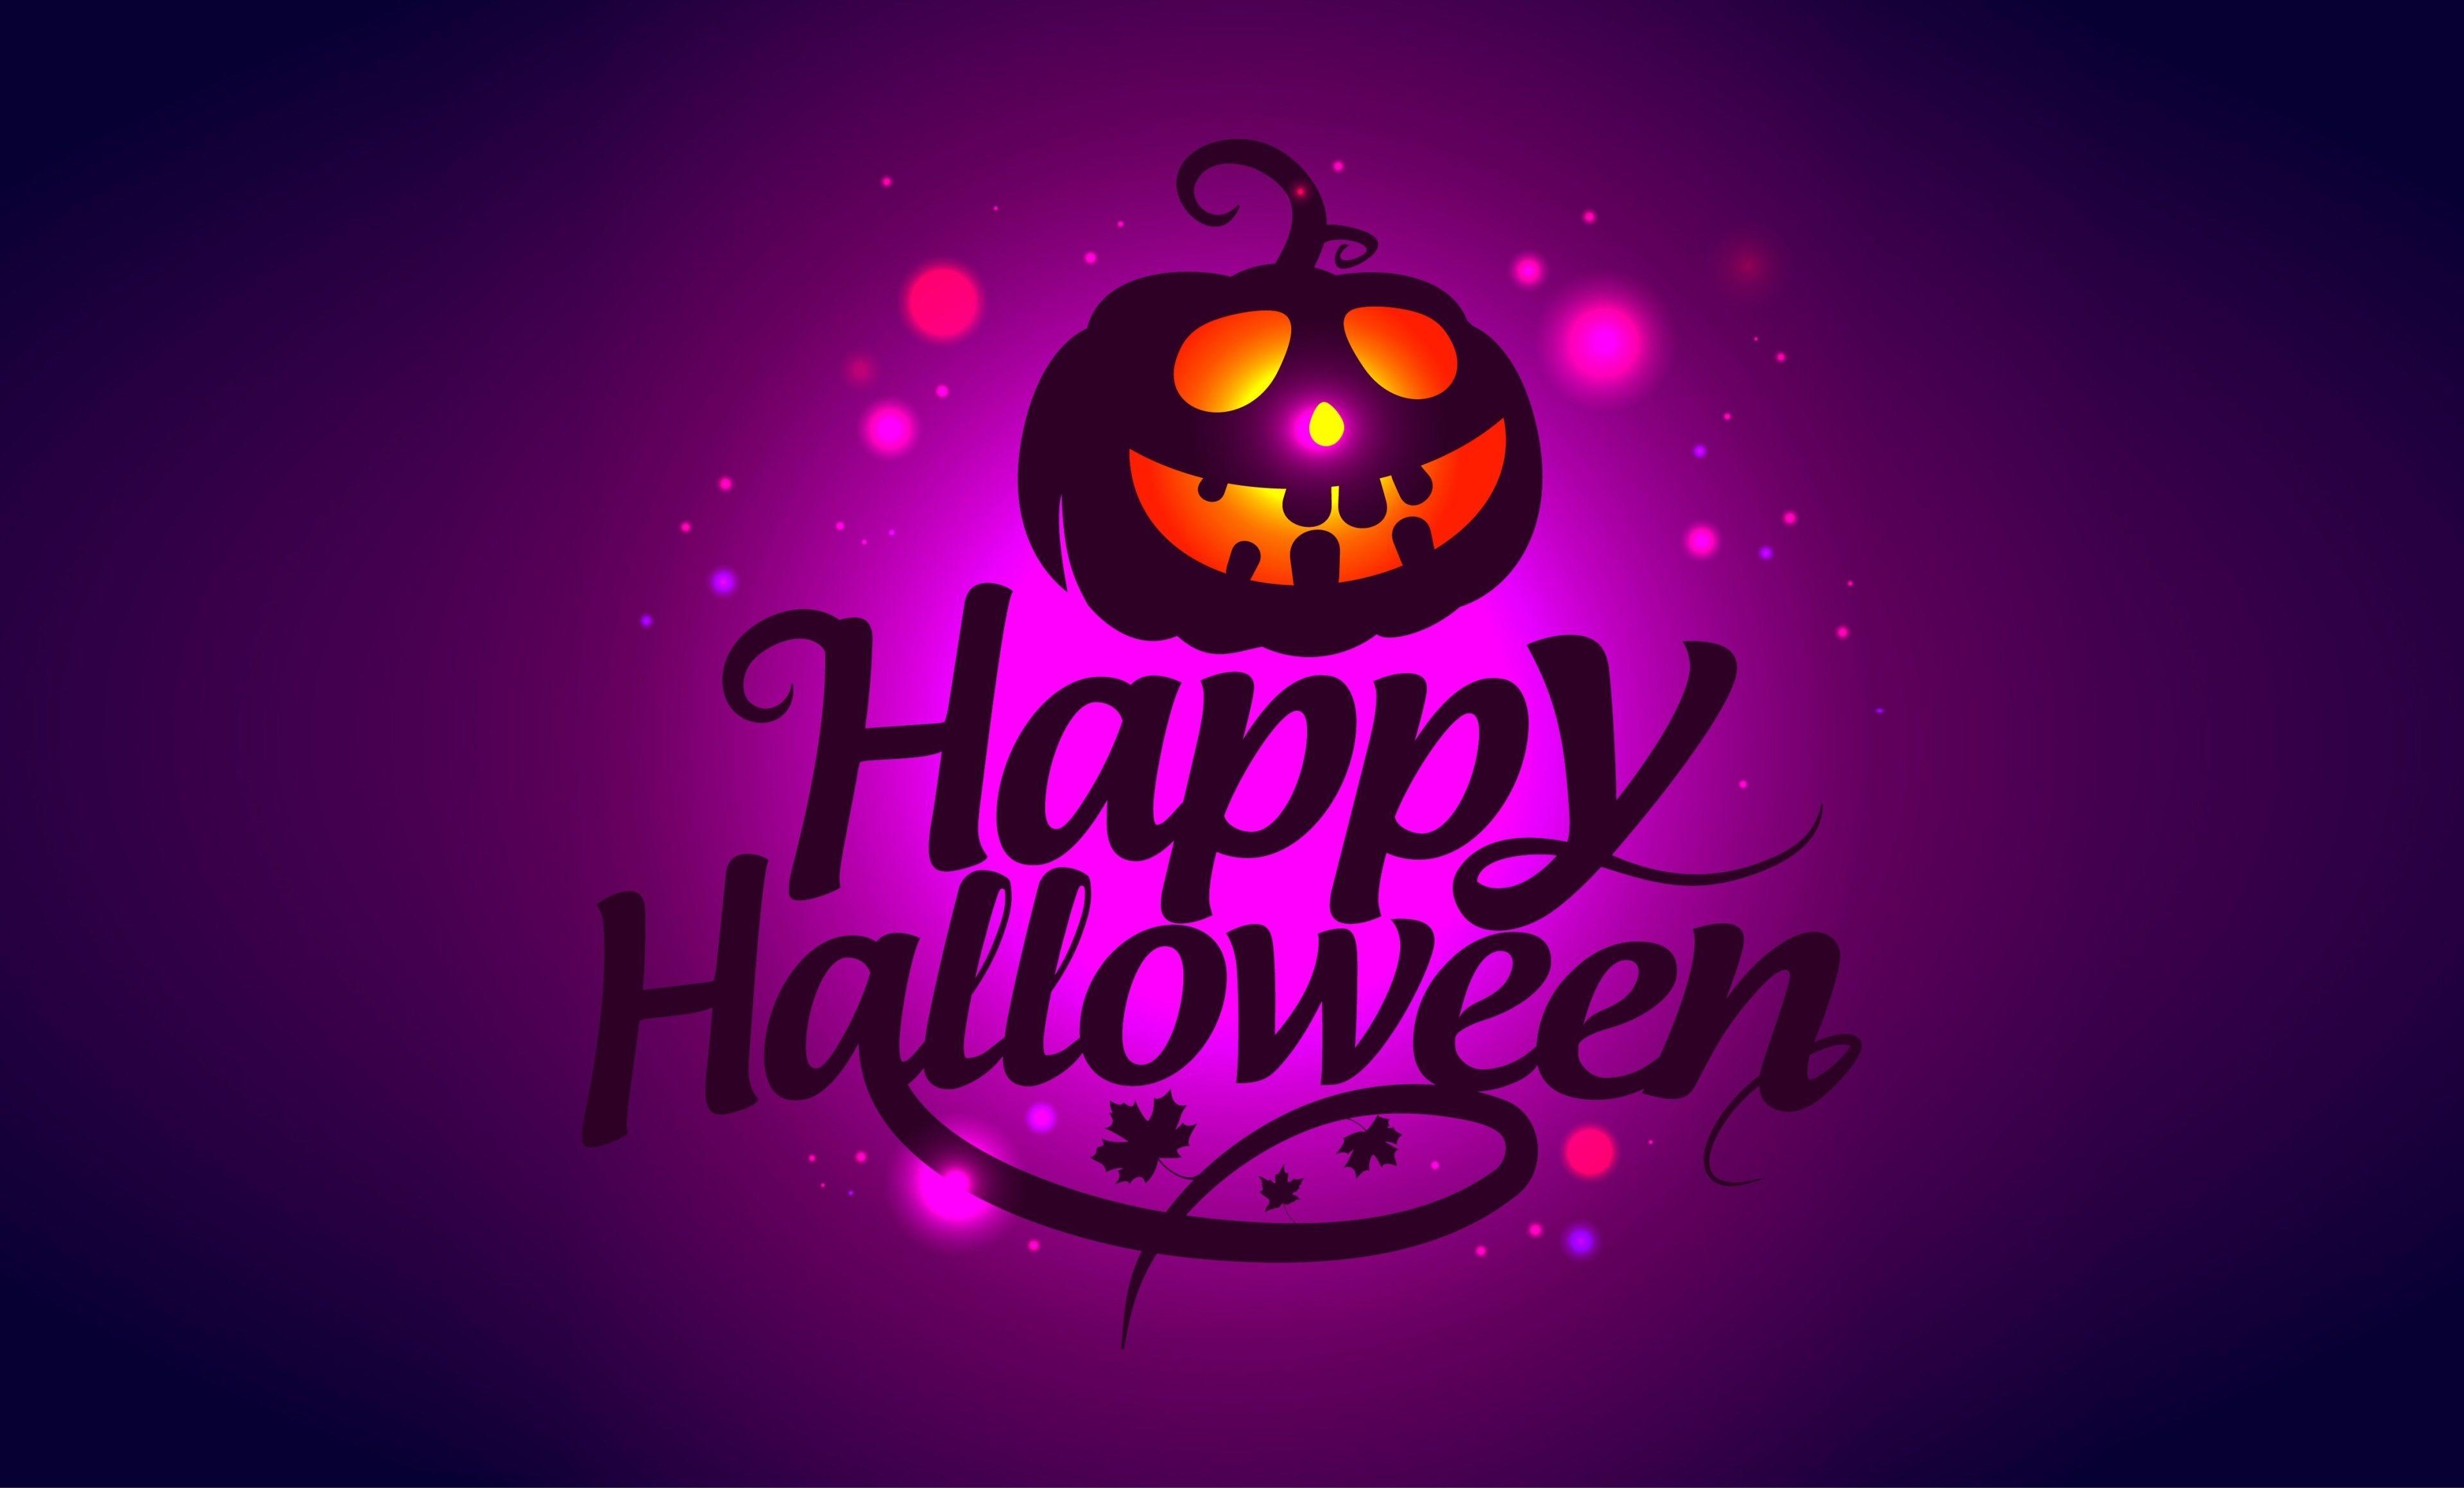 Happy Halloween Desktop Wallpapers Top Free Happy Halloween Desktop